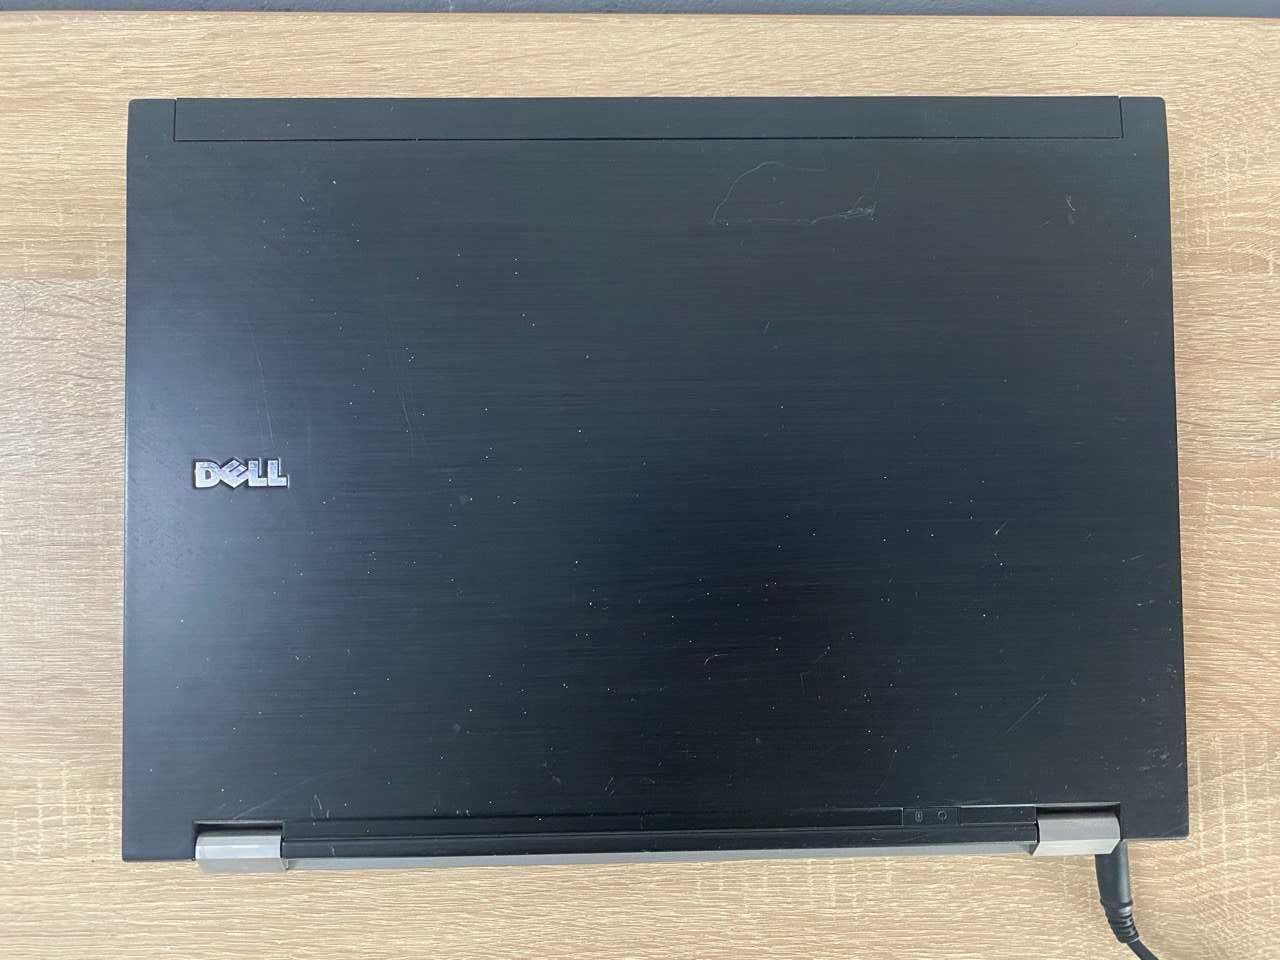 Ноутбук DELL Latitude E 6500, Intel Core 2 Duo DDR 160 GB P8700 2.5Ghz